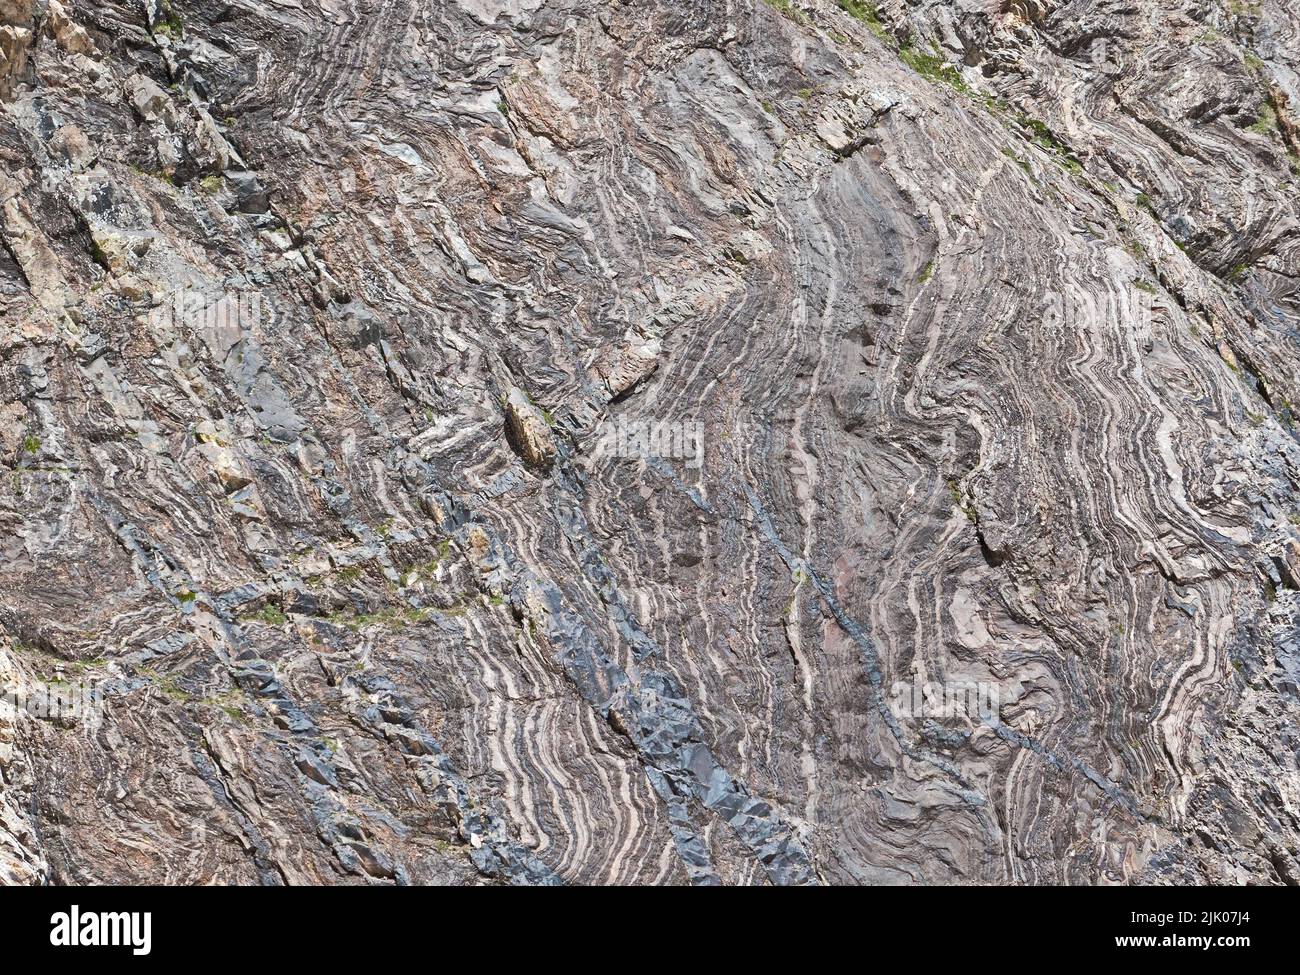 Dettaglio di strati grigi, deformati e curvi nella roccia, causati da forze geologiche, sfondo naturale Foto Stock